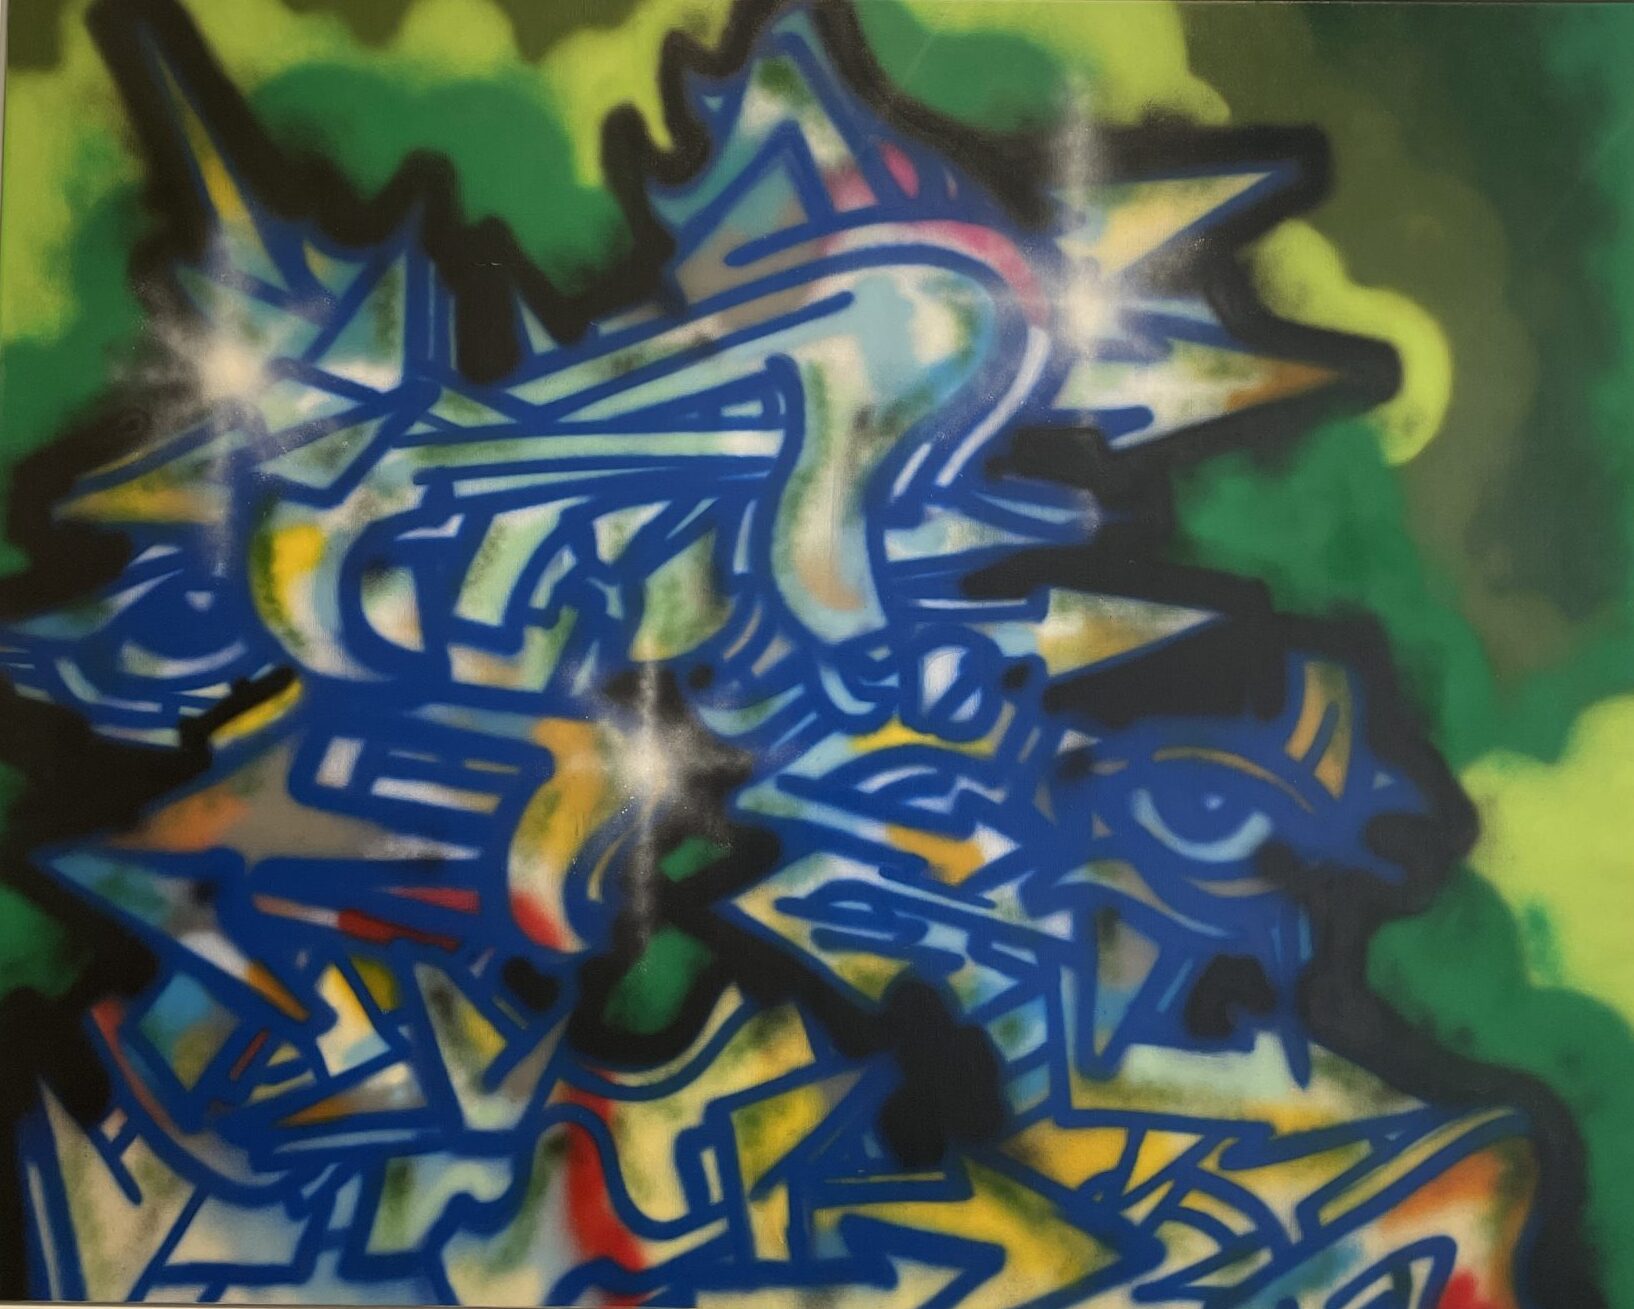 phase2museumofgraffiti2-scaled-1